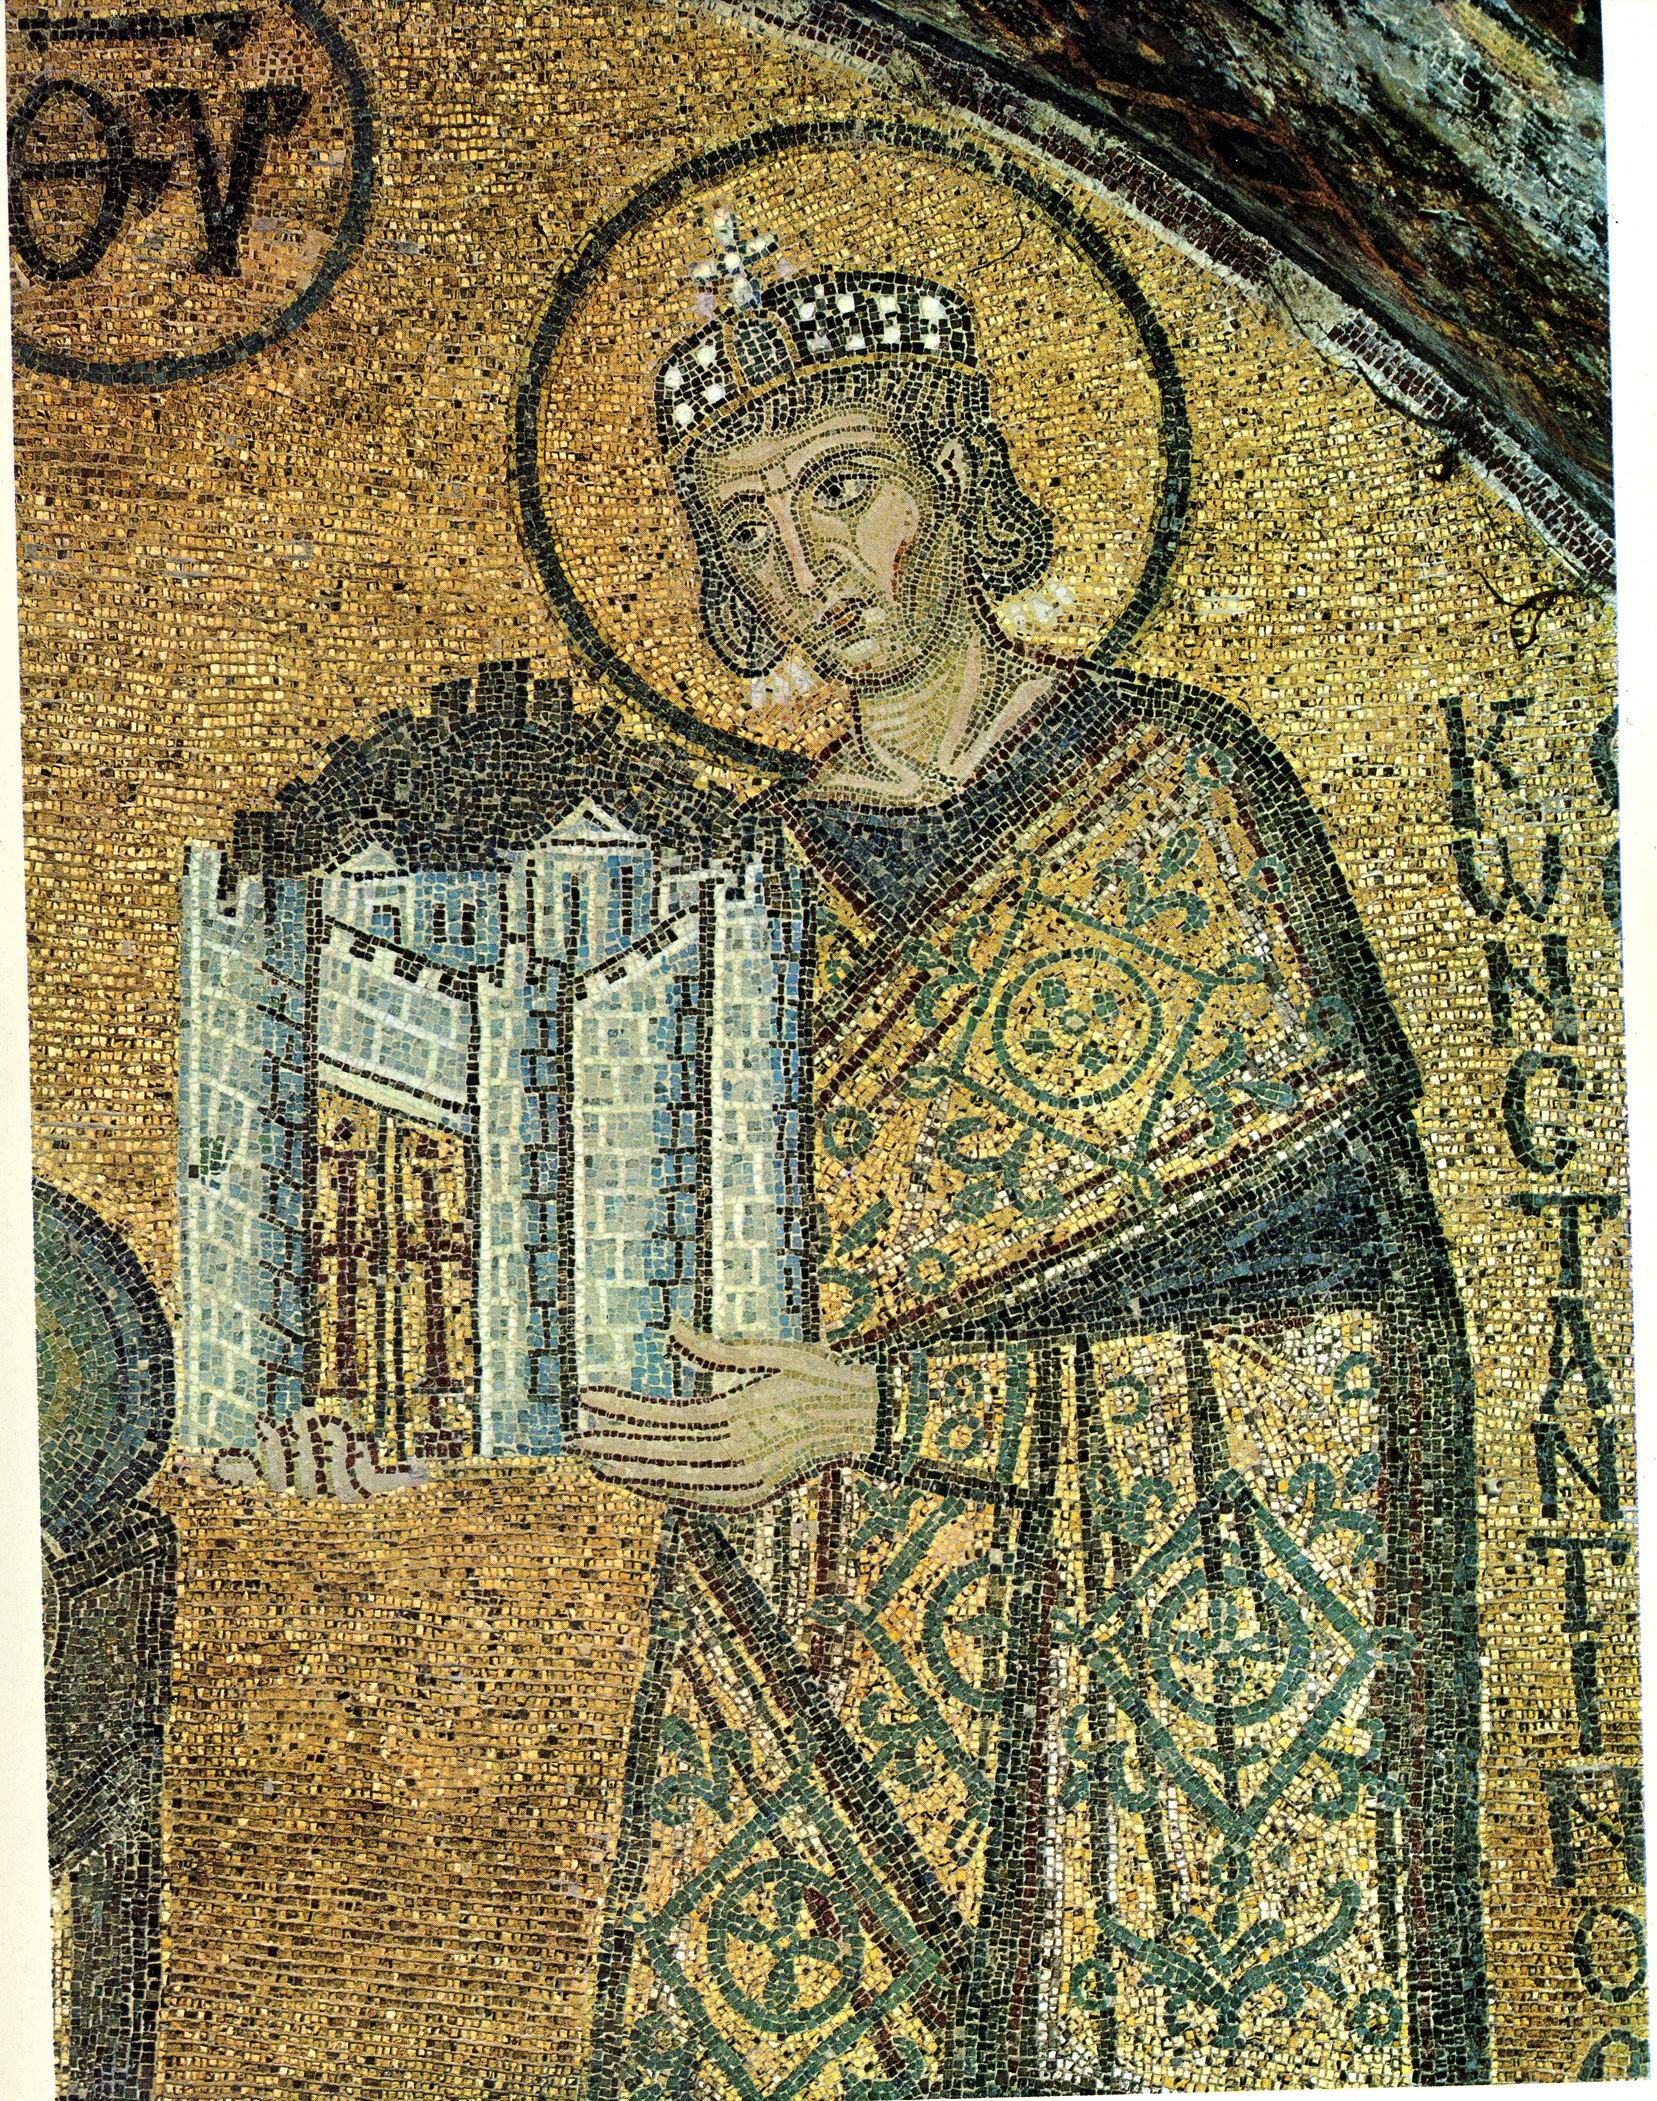 4 век 10 год. Миланский эдикт императора Константина. Мозаика храм Святой Софии Константинополь Юстиниан.